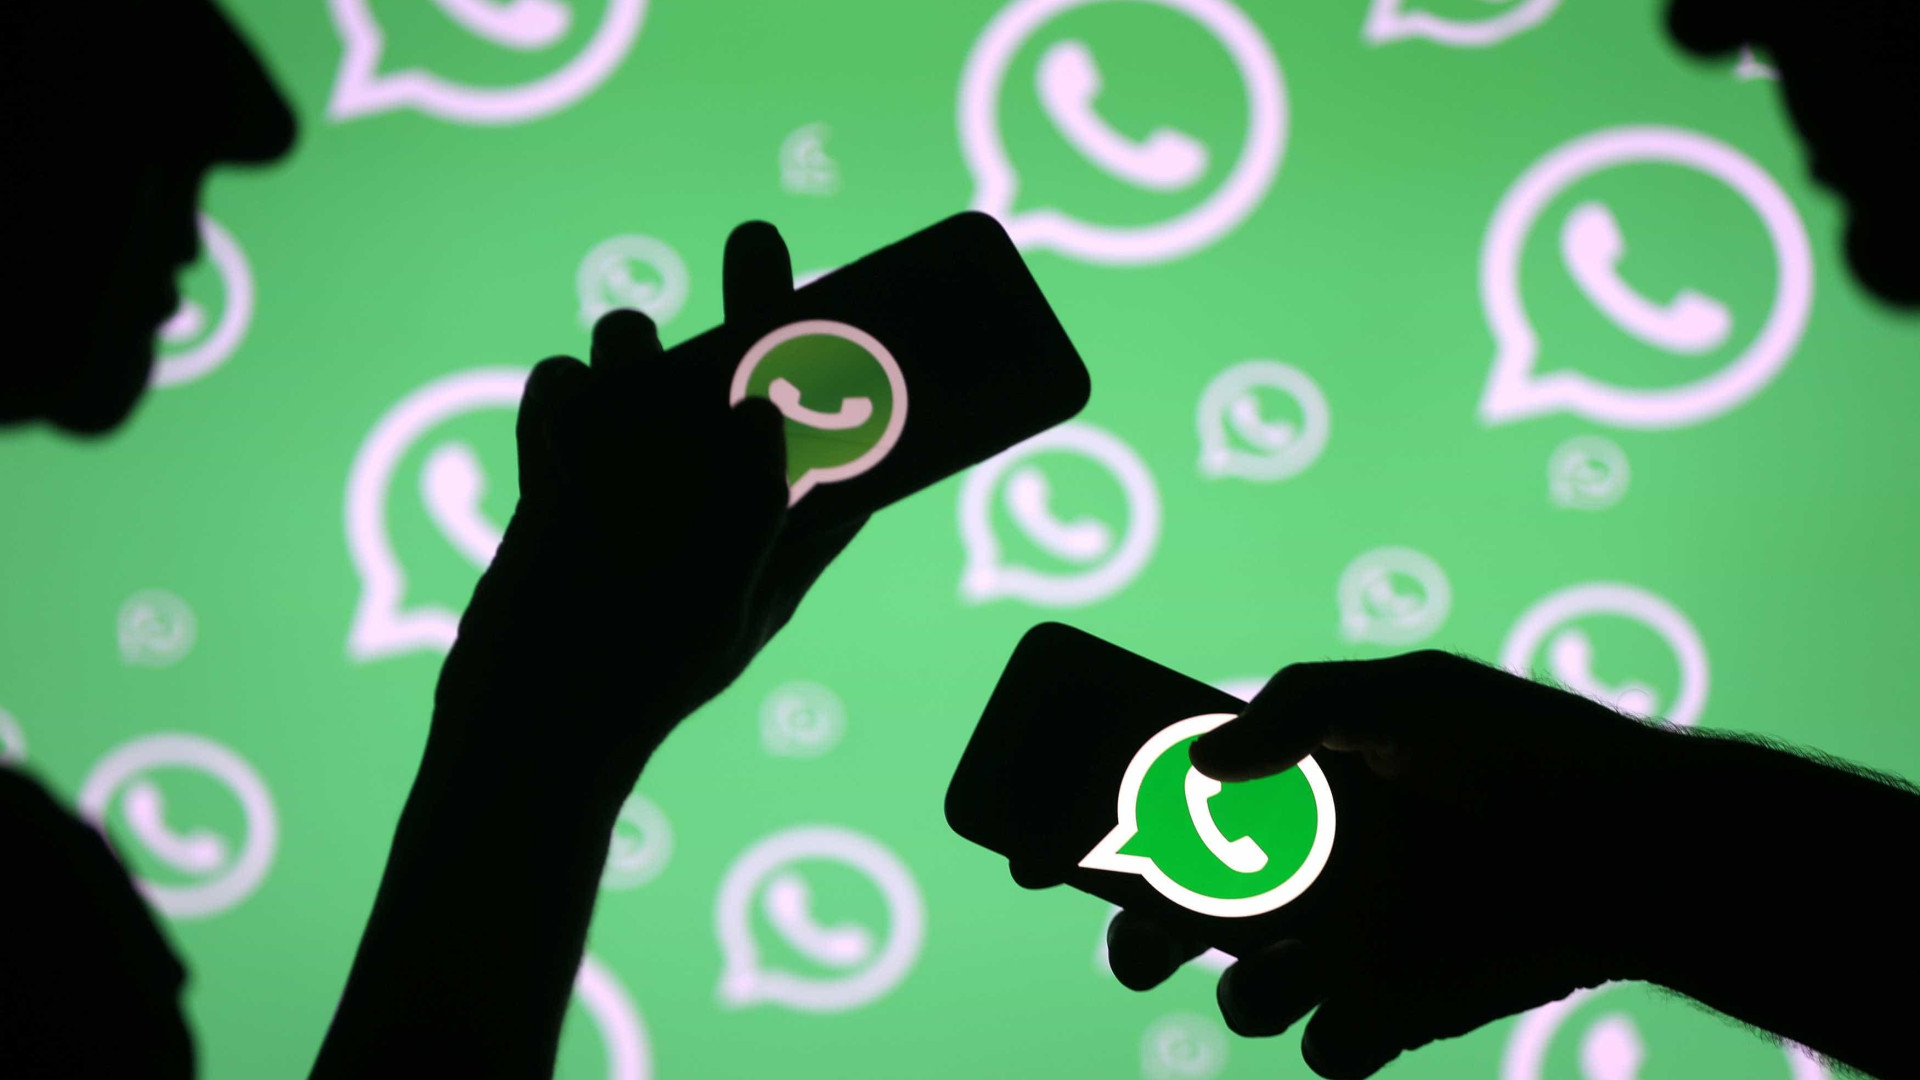 Criador do WhatsApp disse que integração com Facebook seria 'ruína'